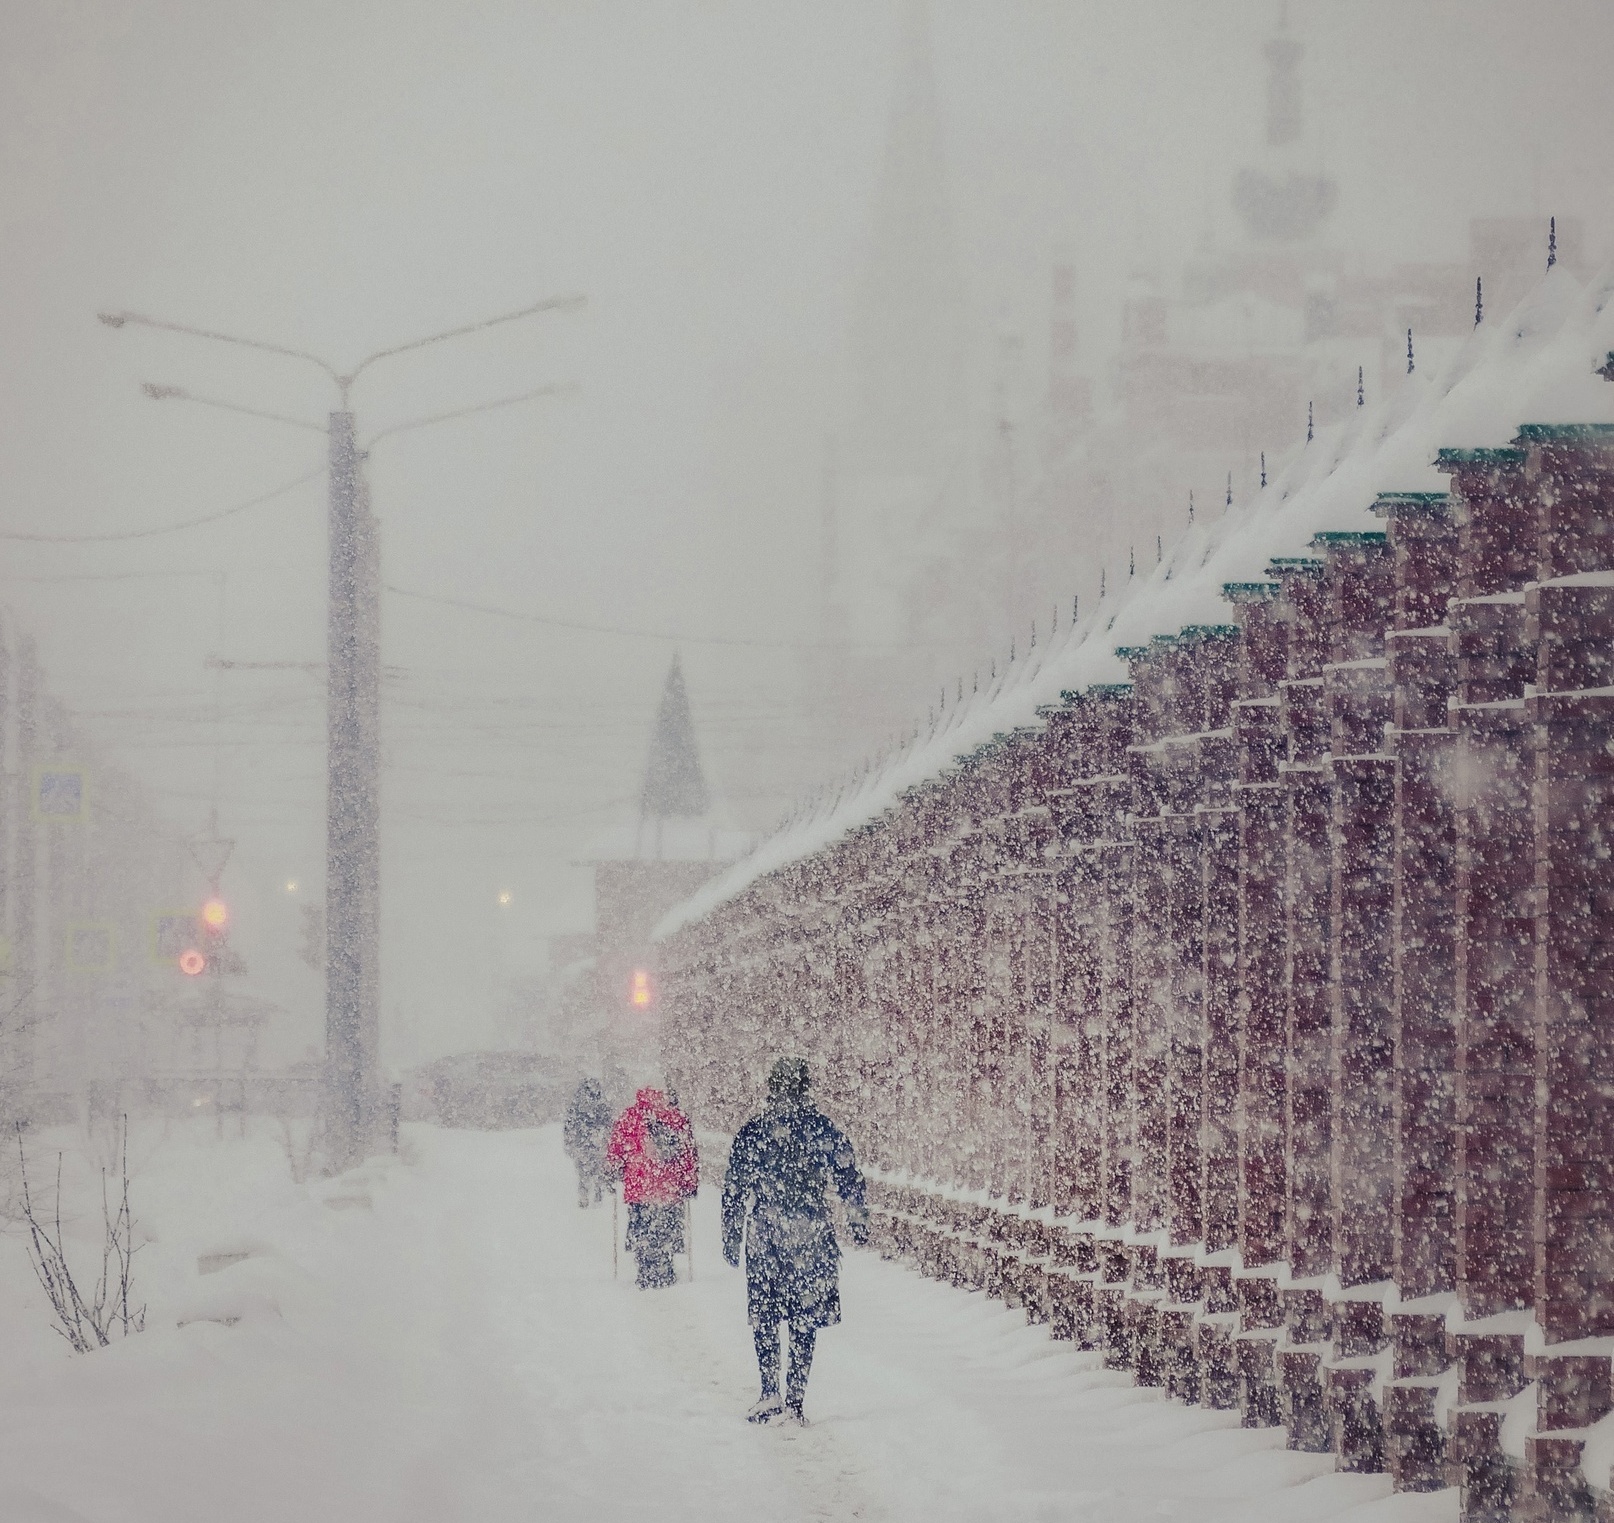 Январские снегопады предупреждают о дождливом лете: что скажет эколог о народных приметах зимы